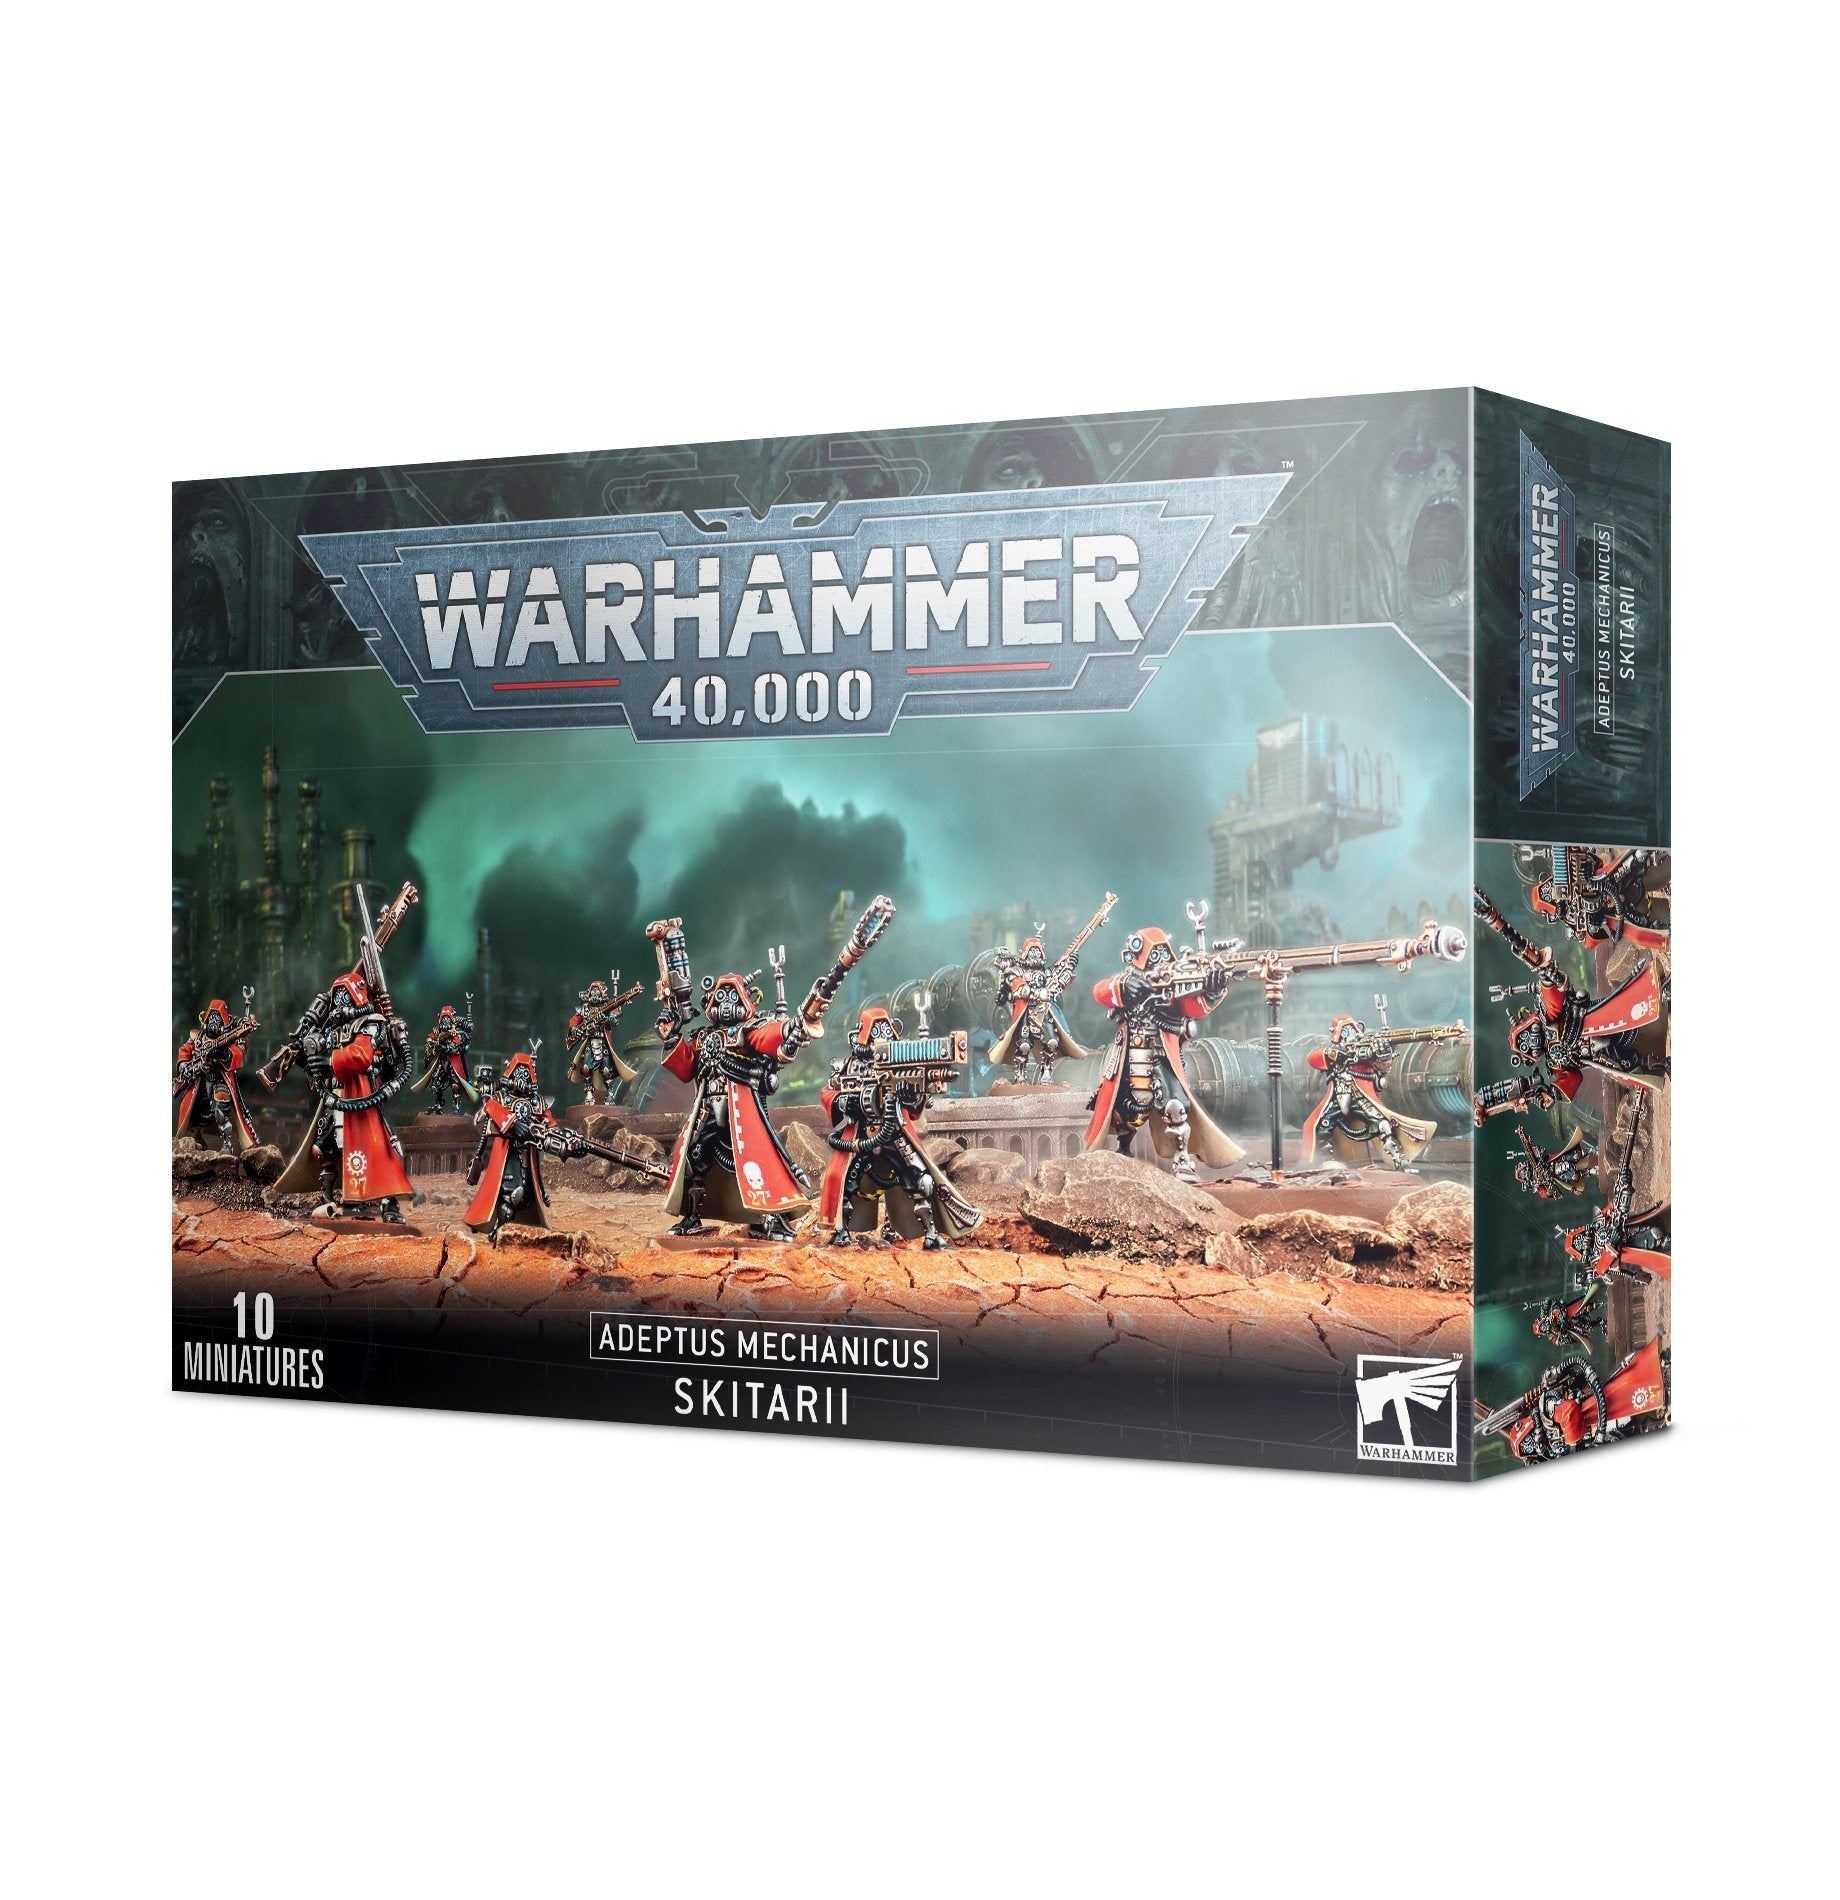 warhammer 40k 40,000 adeptus mechanicus skitarii | Gamers Paradise